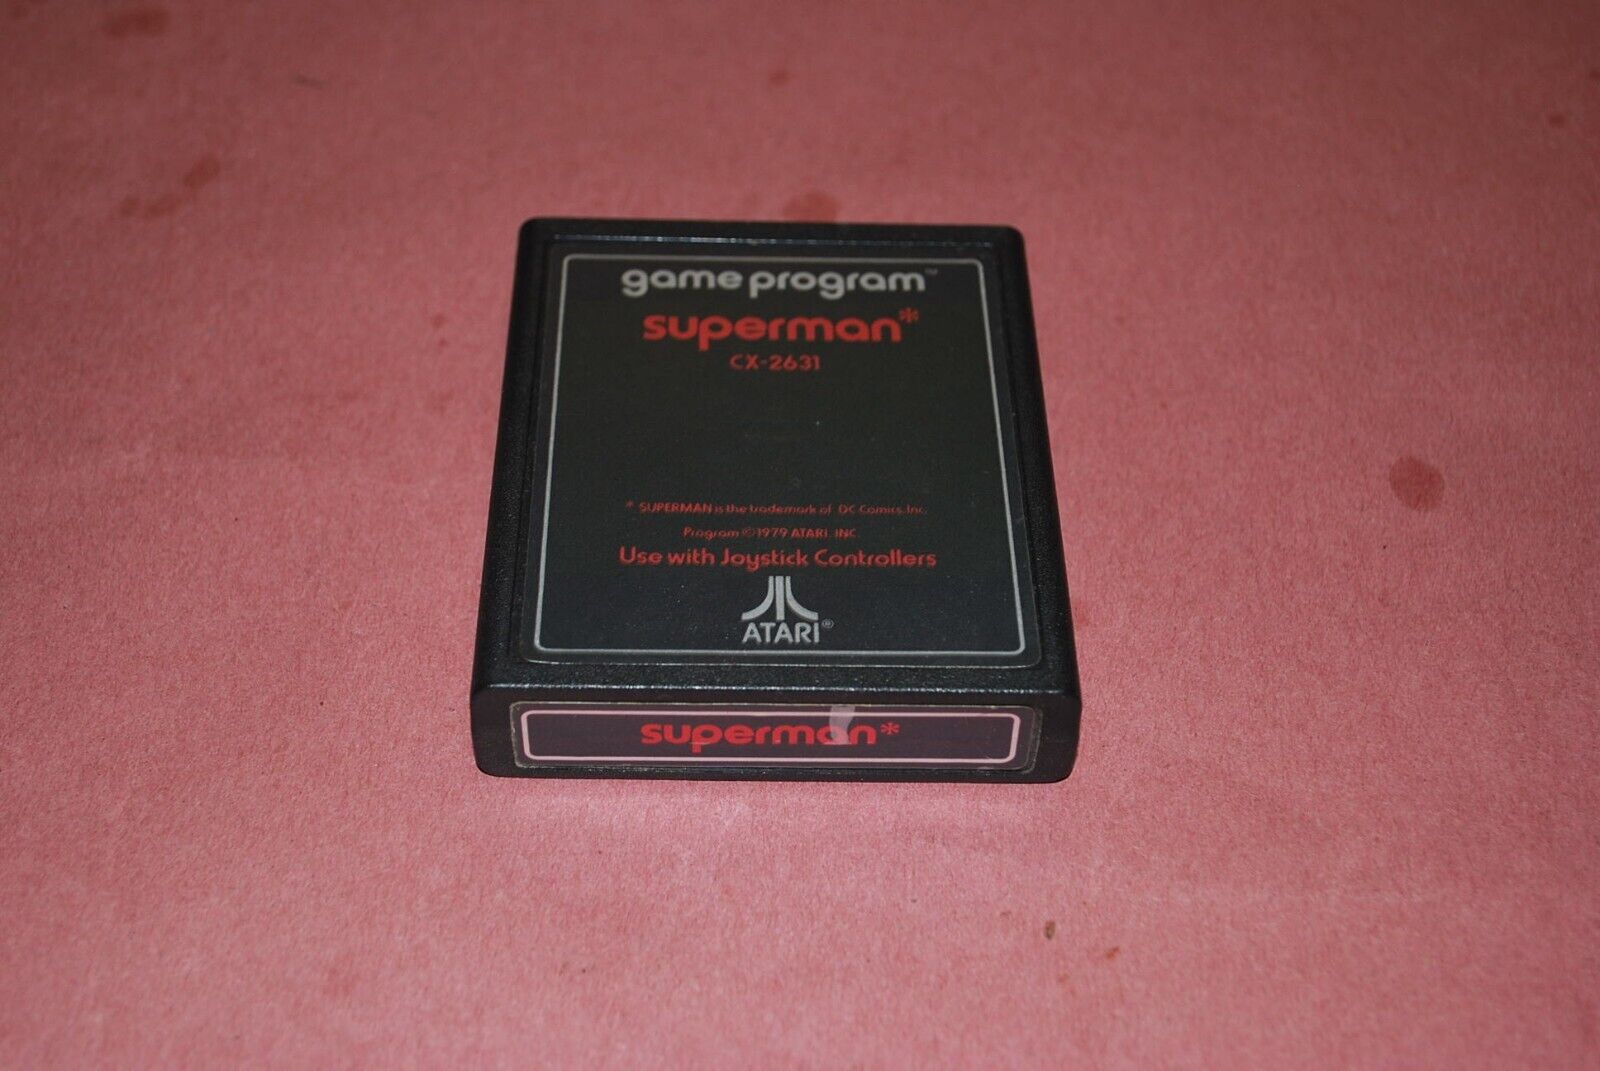 VINTAGE ORIGINAL SUPERMAN CX 2631 GAME CARTRIDGE FOR ATARI 2600